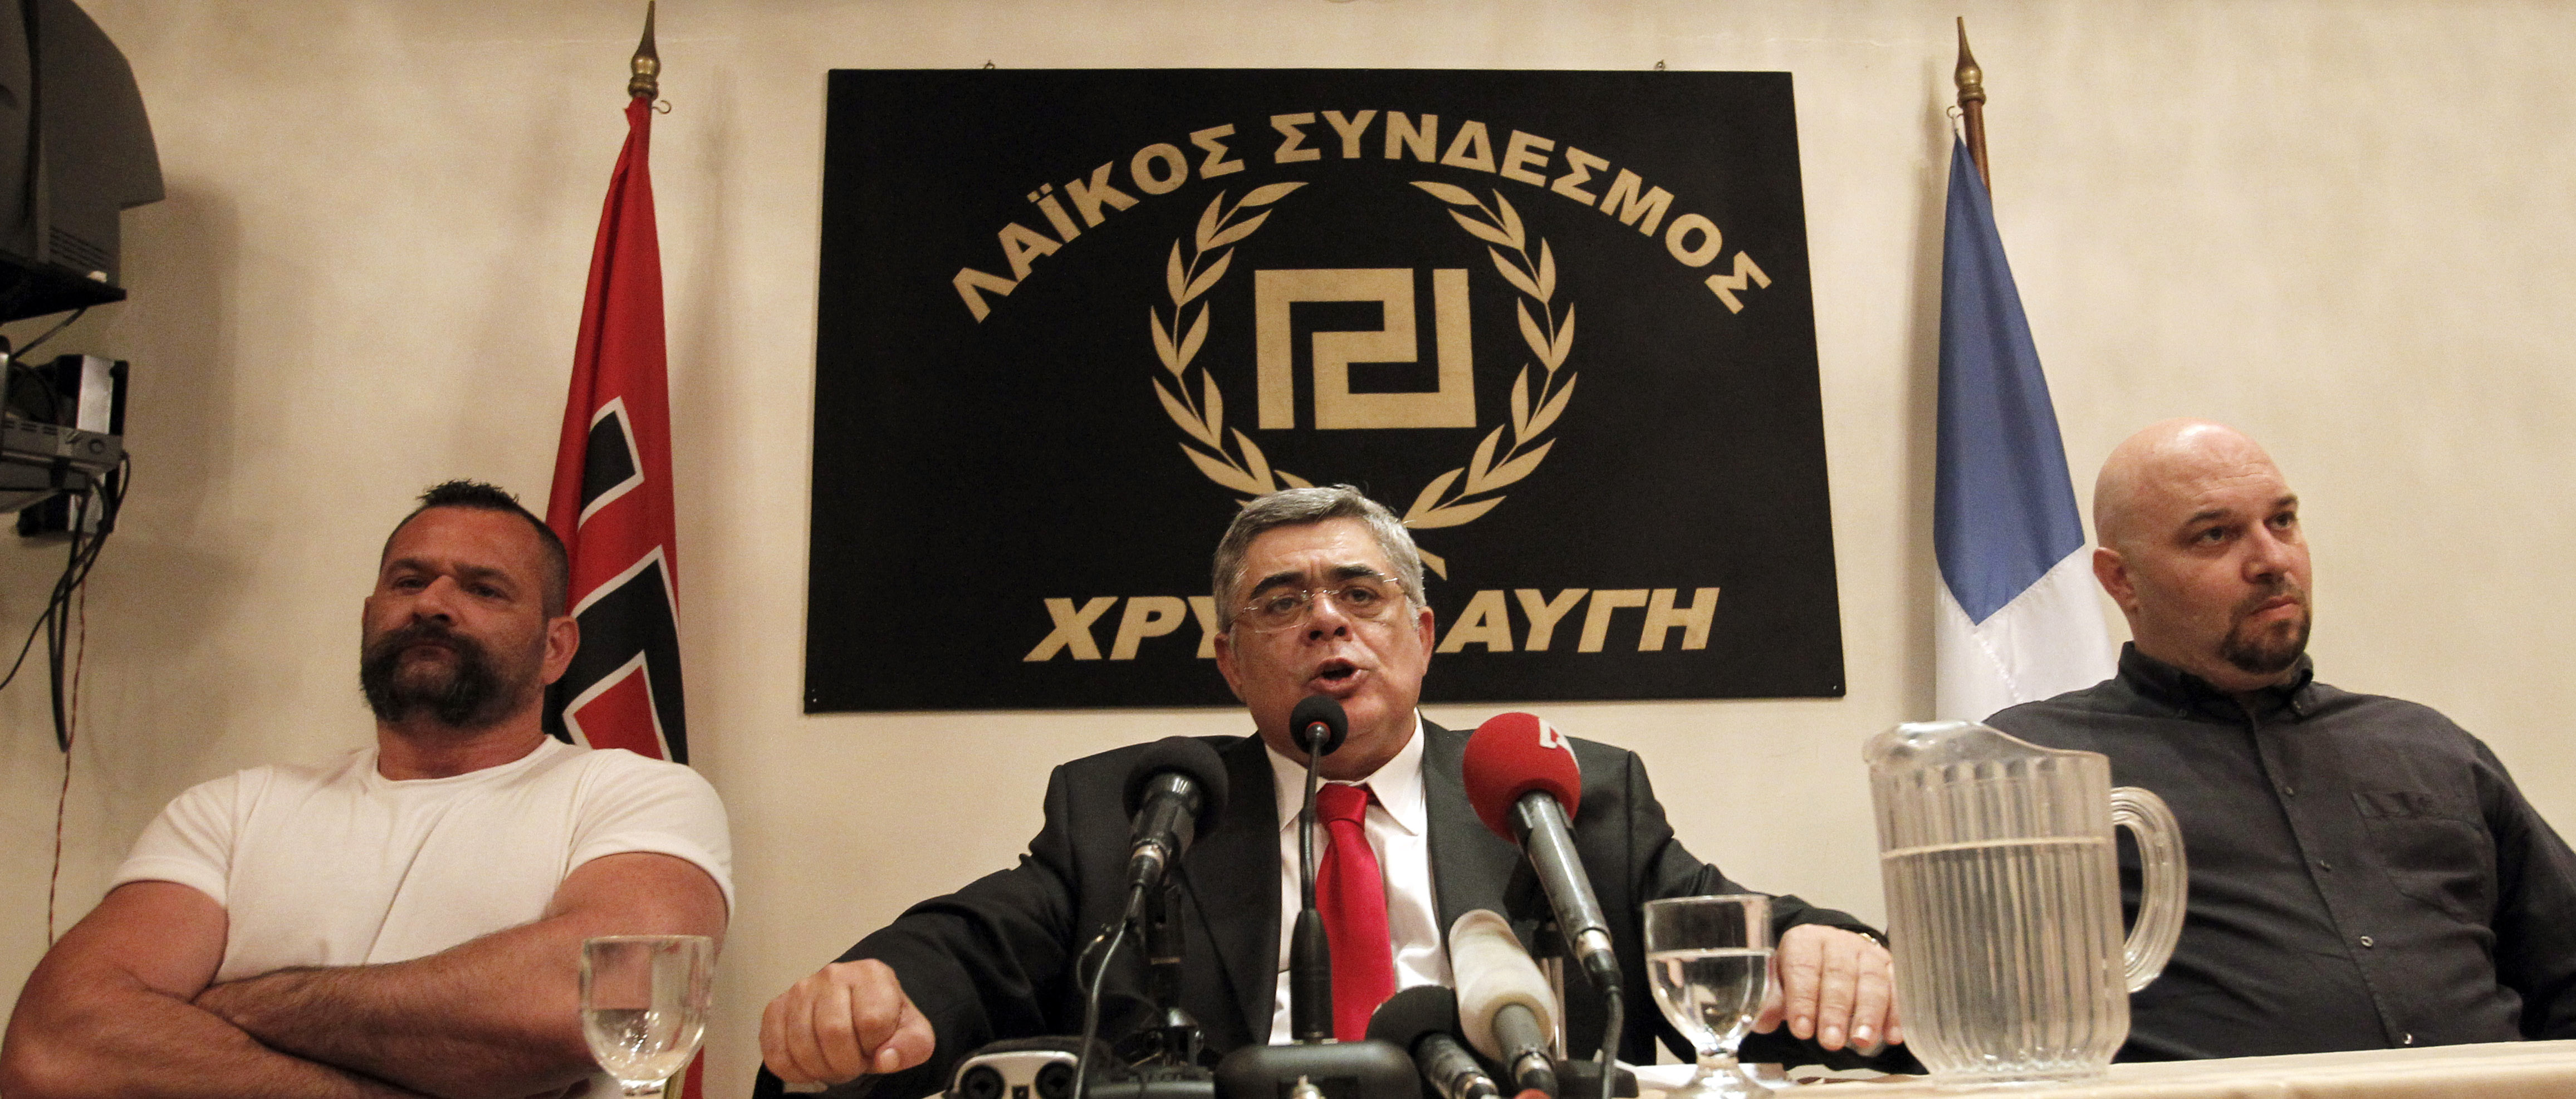 Det nazista partiets symbol påminner om svastikan som Hitler anammade till sitt nazistparti. 